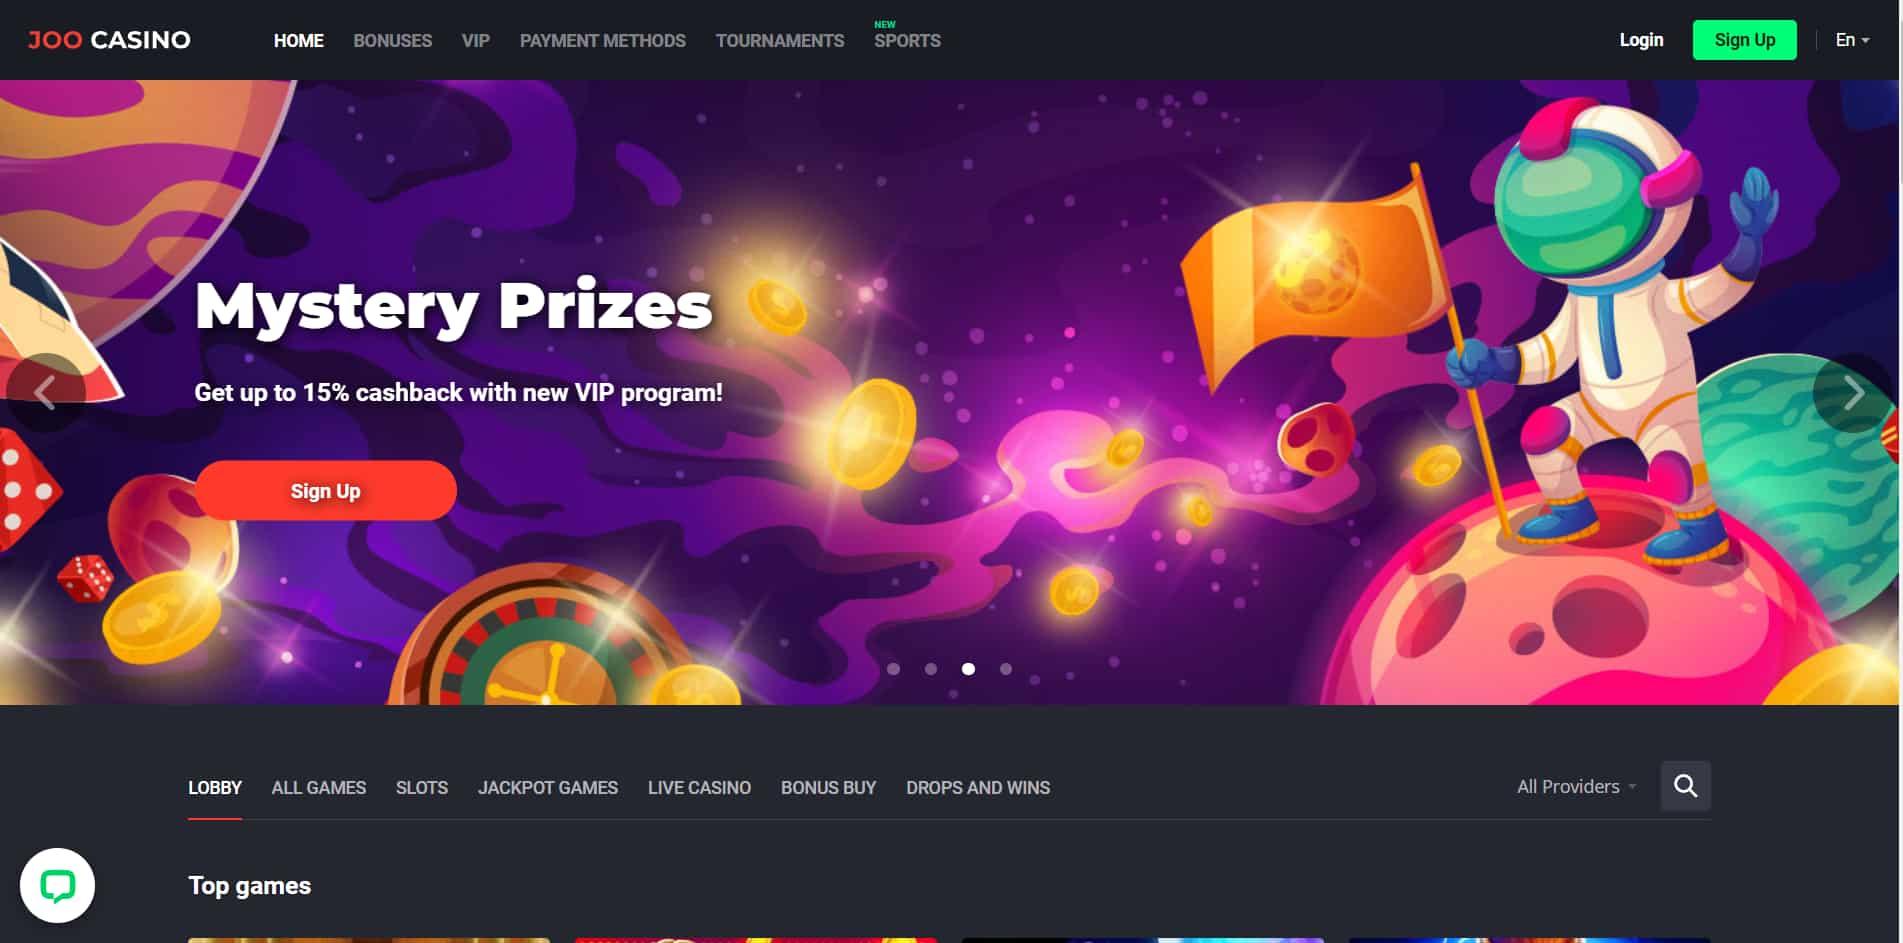 Joo casino homepage